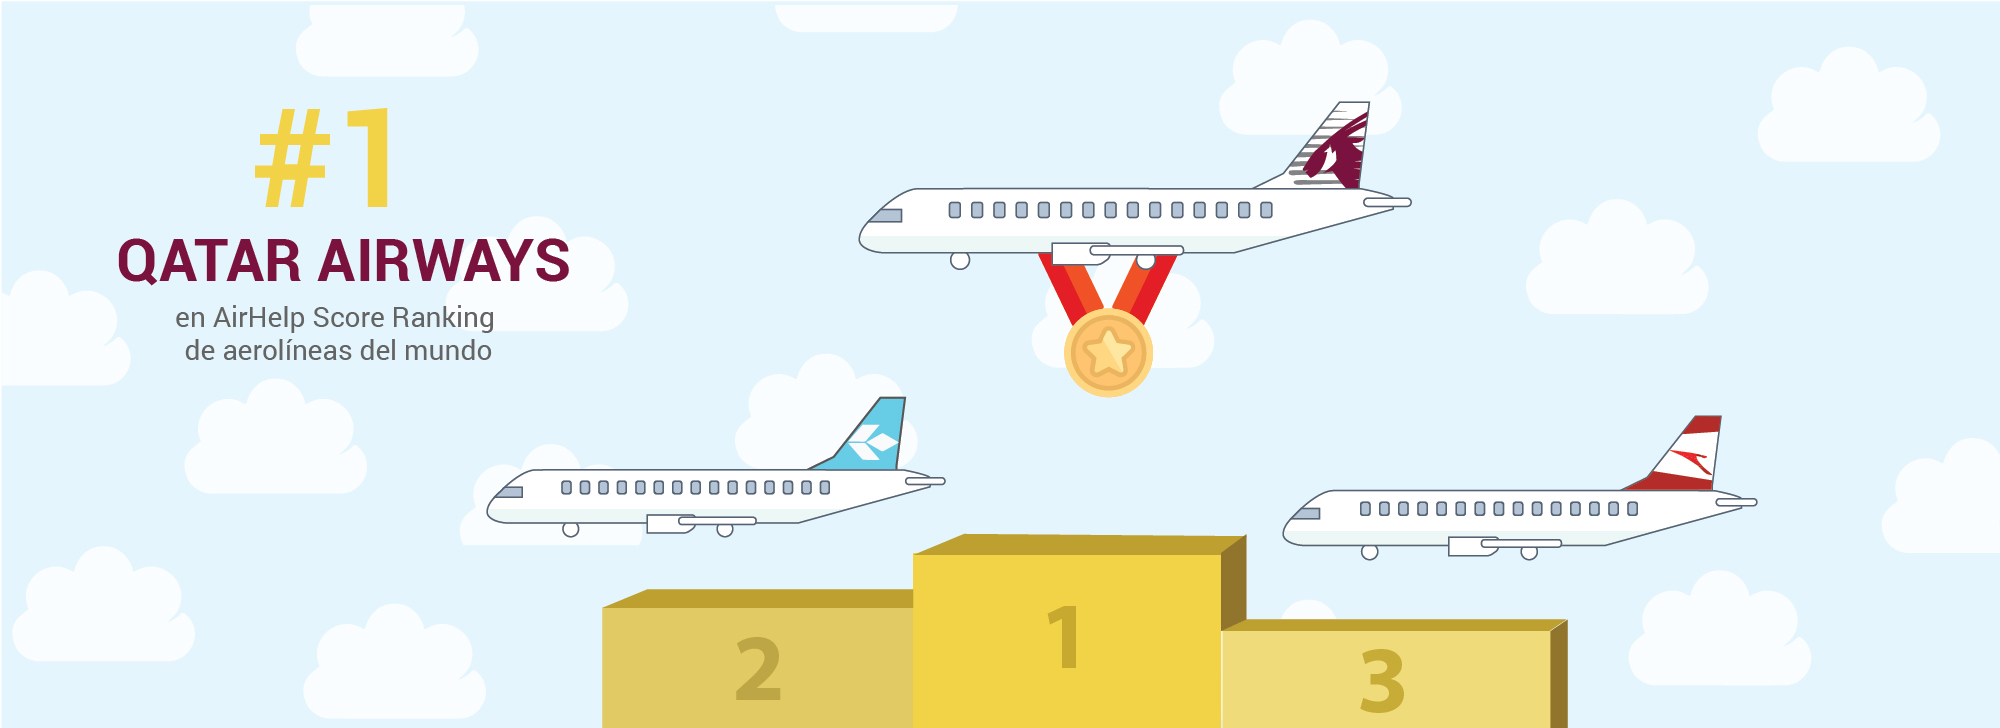 Qatar Airways la aerolínea ganadora en atención al cliente